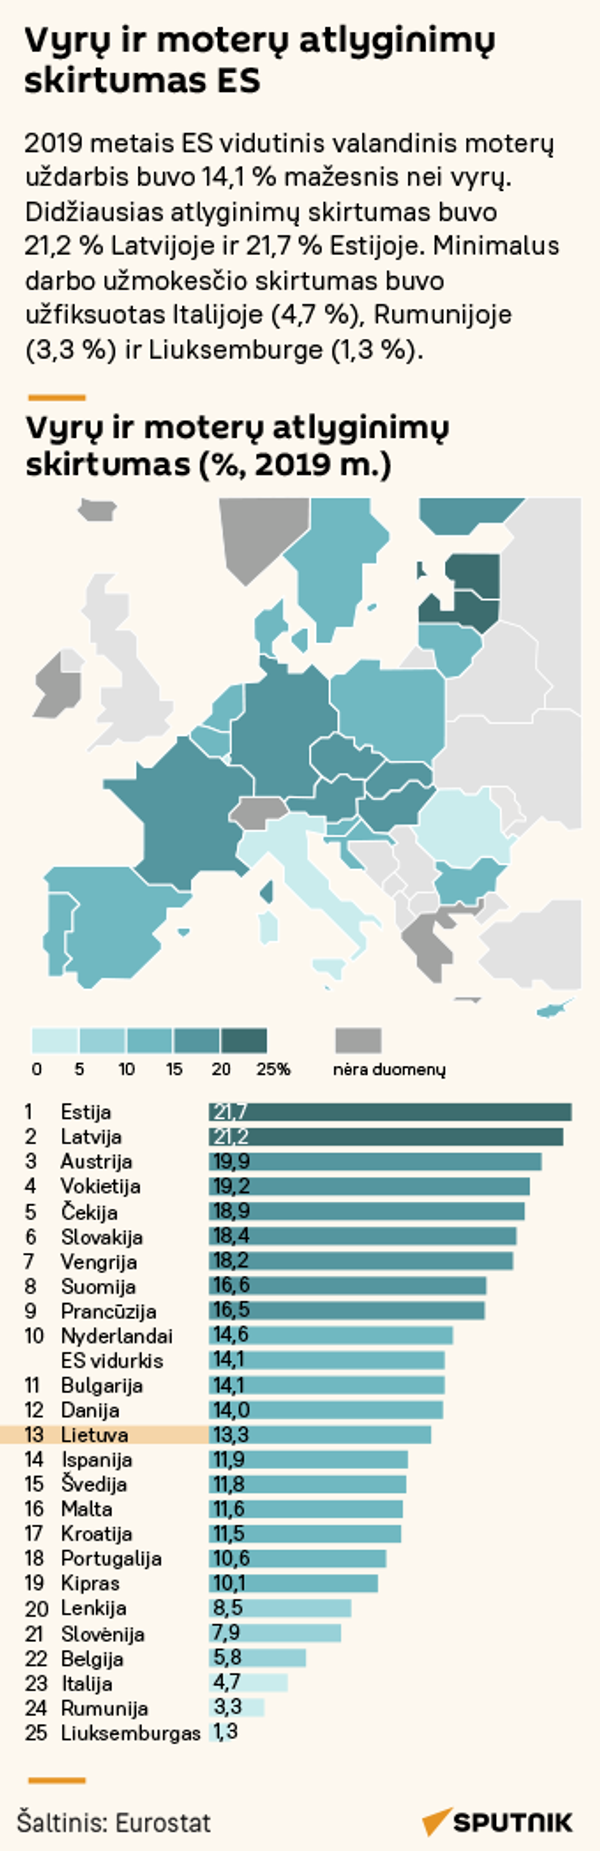 Vyrų ir moterų atlyginimų skirtumas ES - Sputnik Lietuva